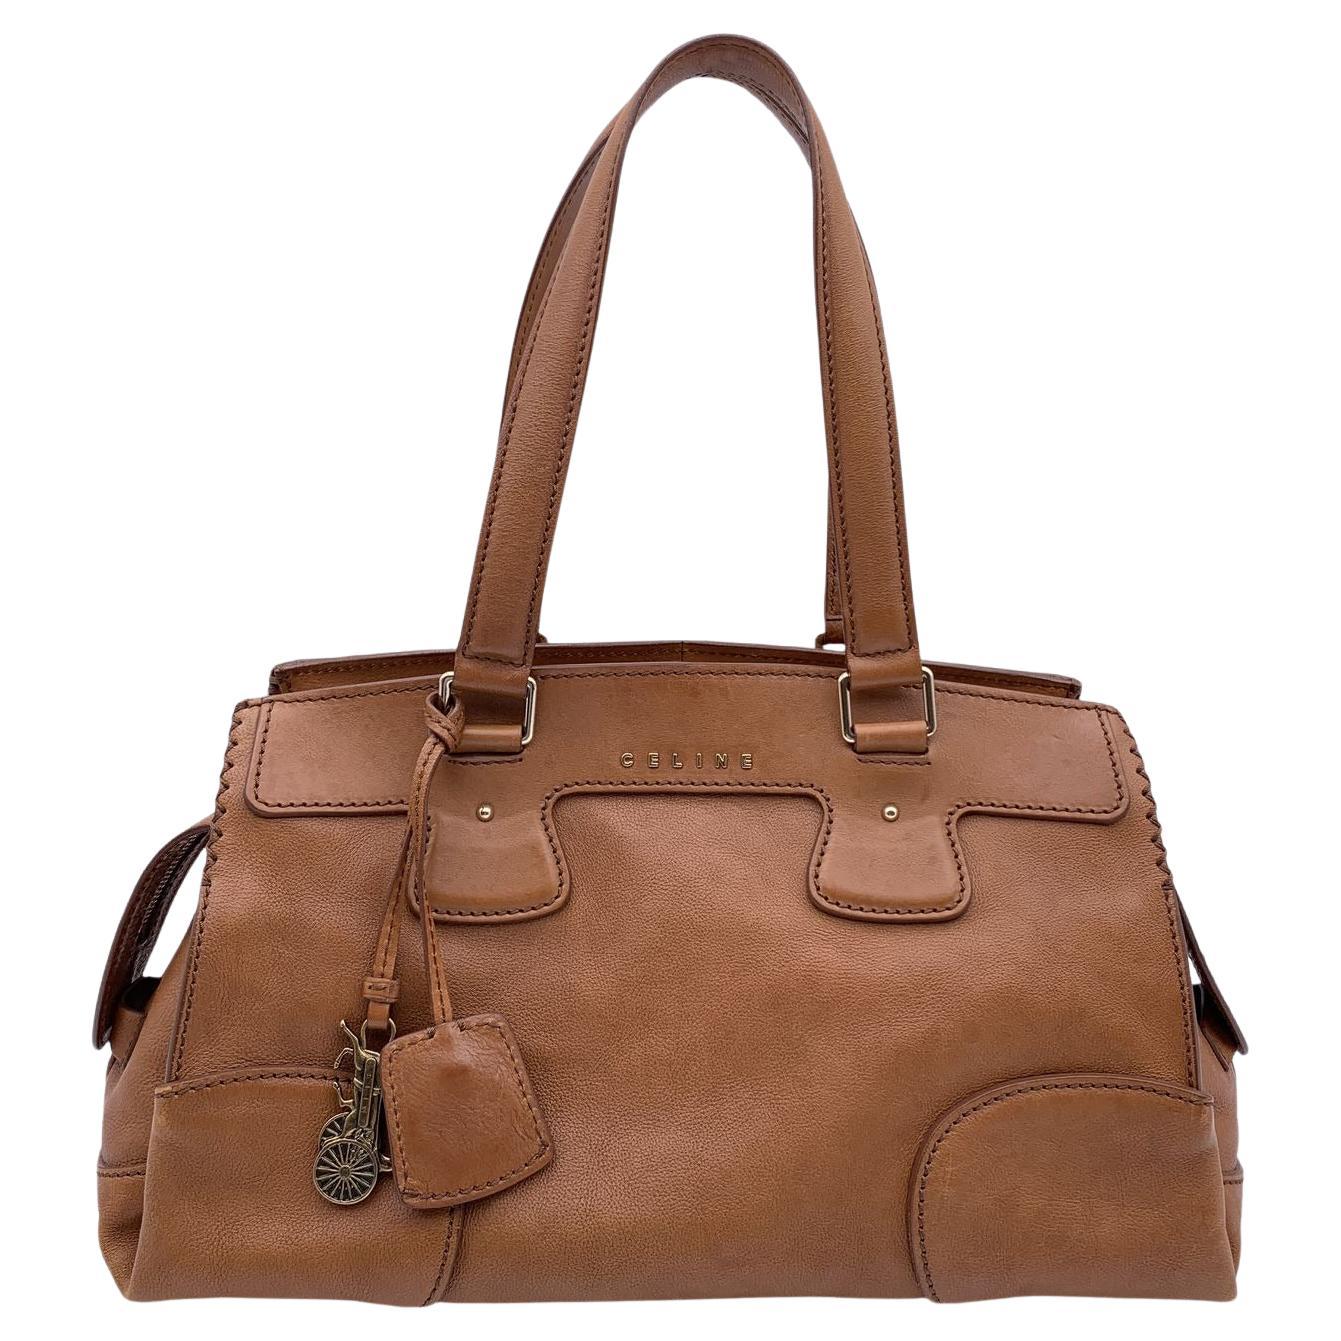 Celine Brown Leather Orlov Bag Shoulder Bag Handbag